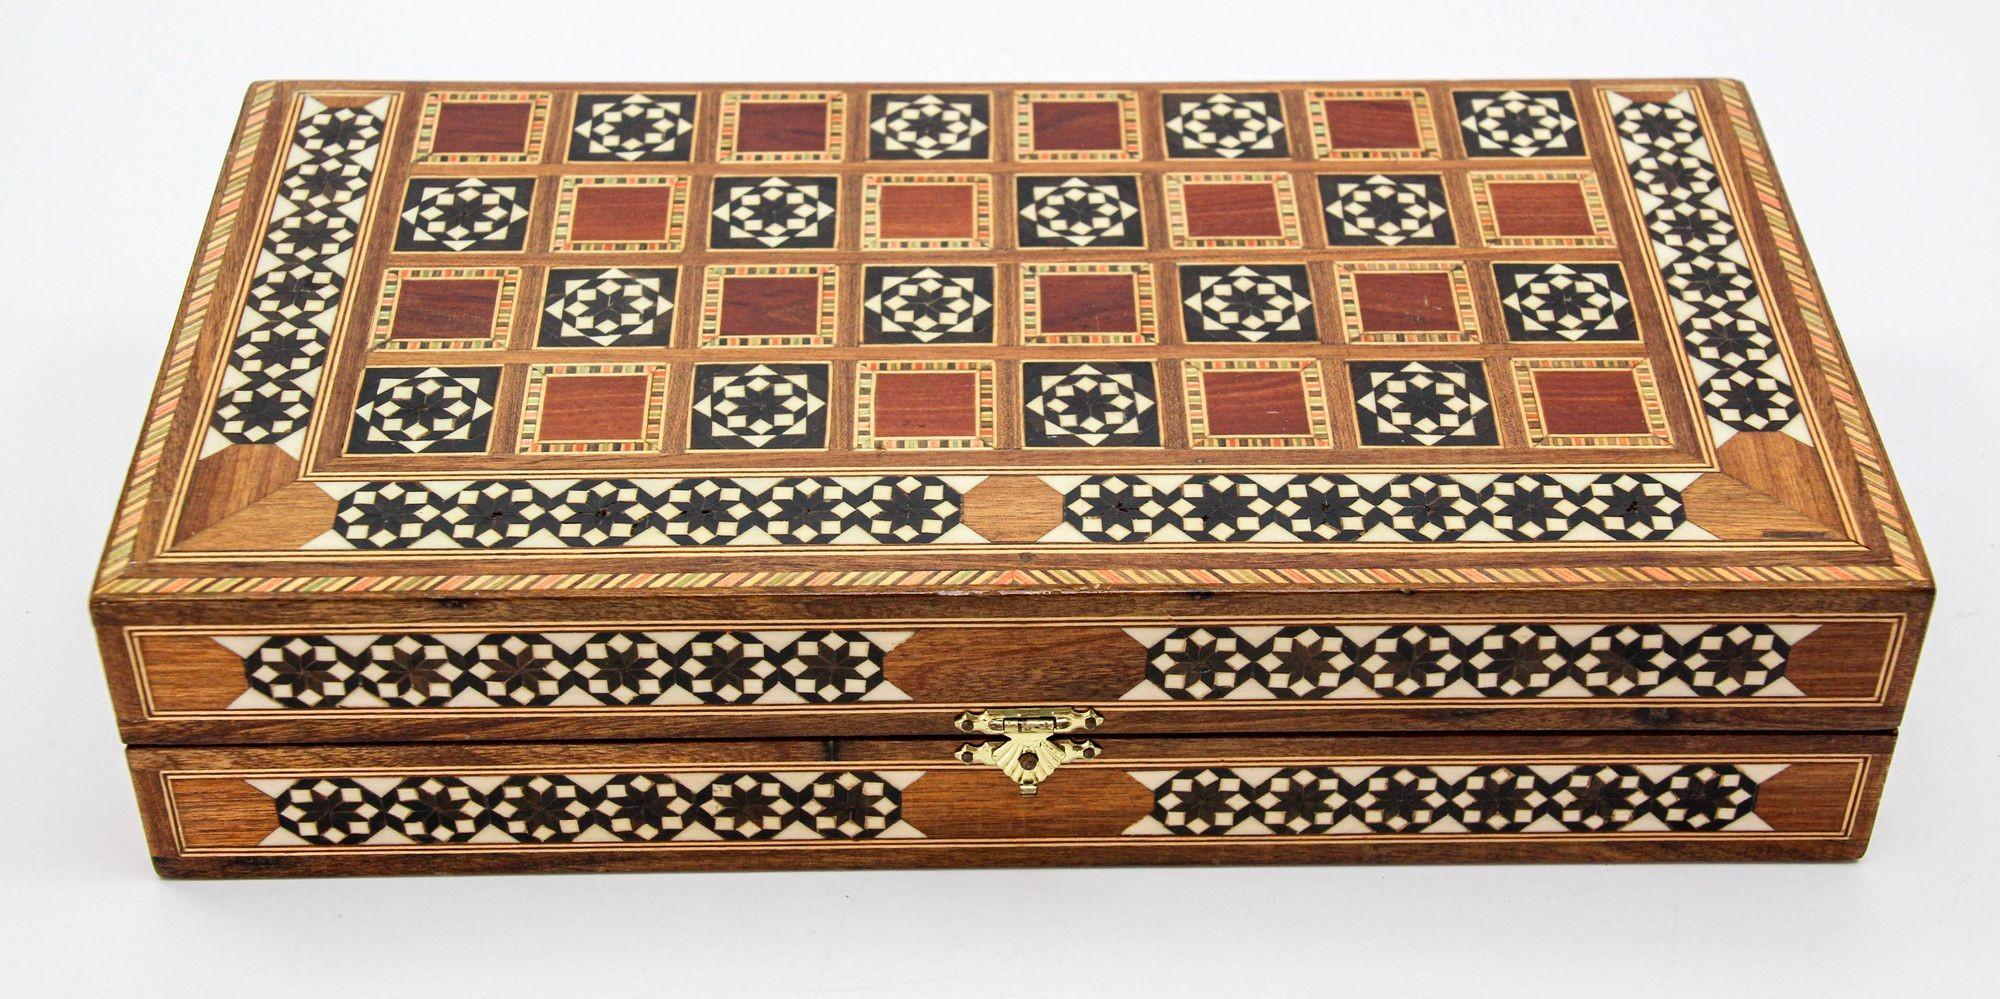 Fruitiers Boîte de backgammon en mosaïque de bois incrustée de marqueterie du Moyen-Orient